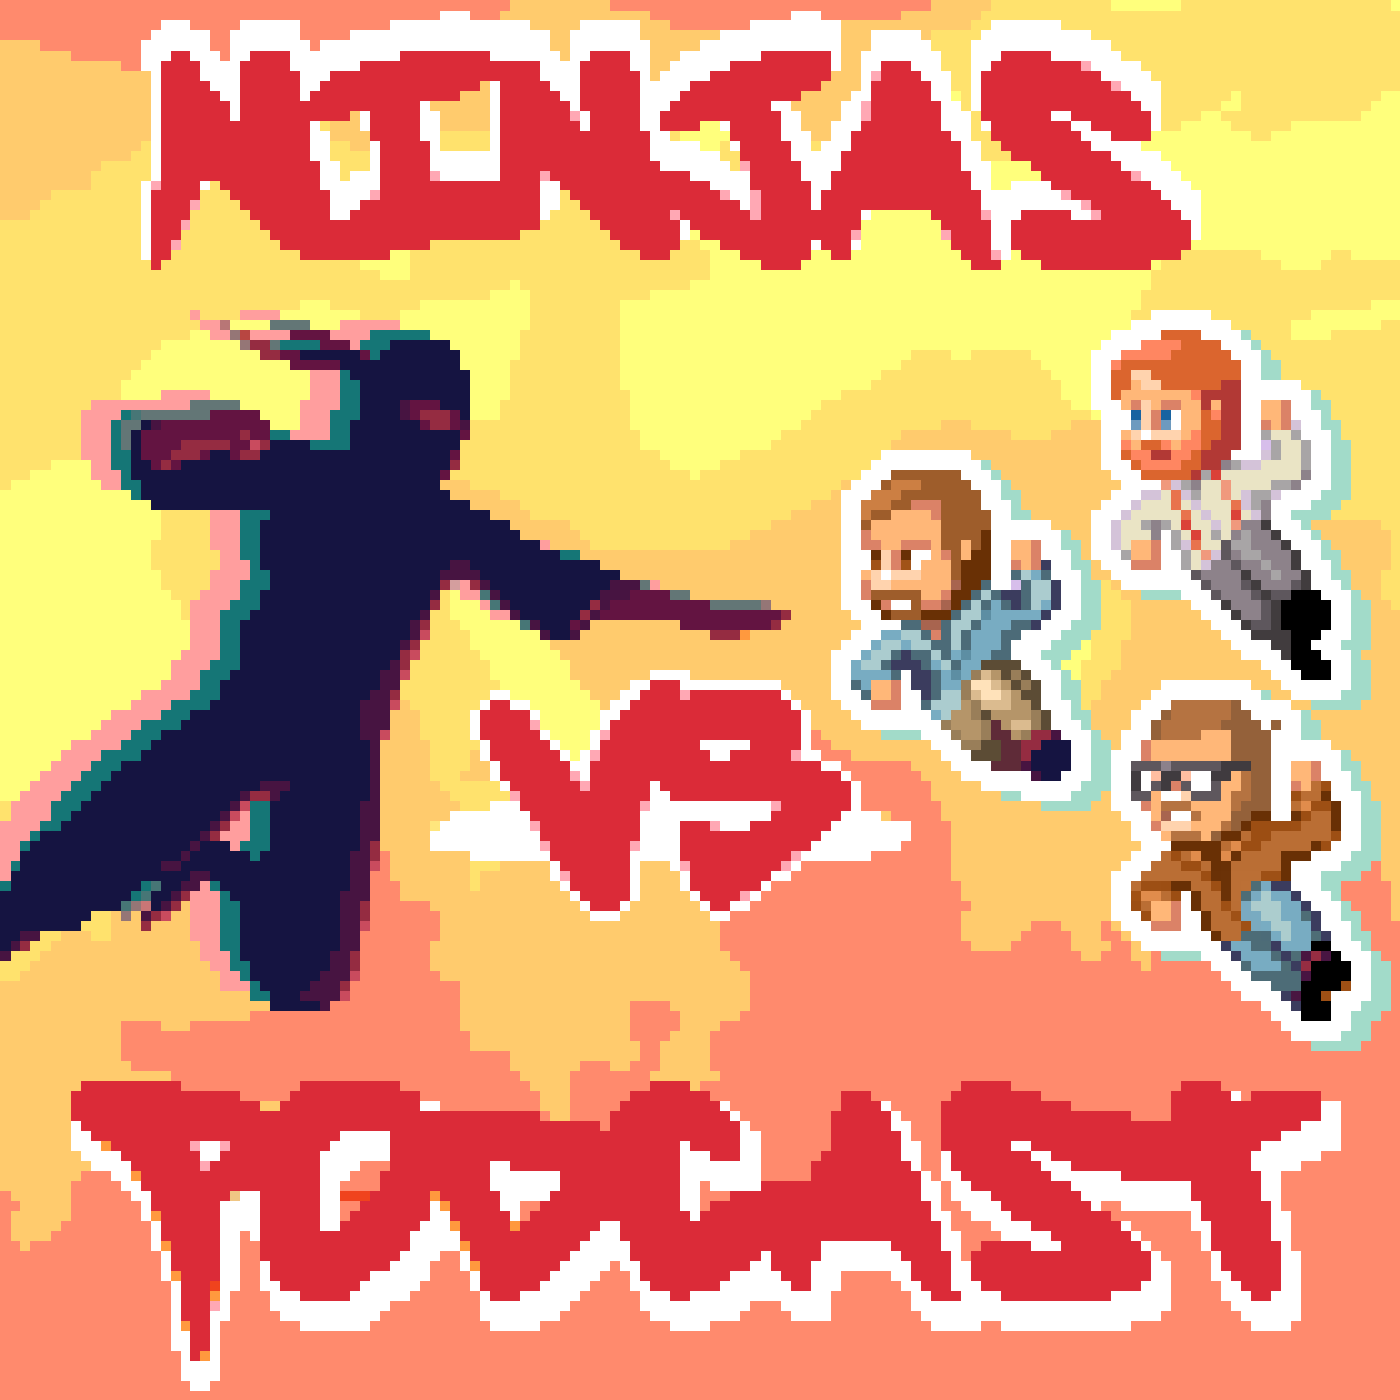 Ninjas vs. Podcast artwork